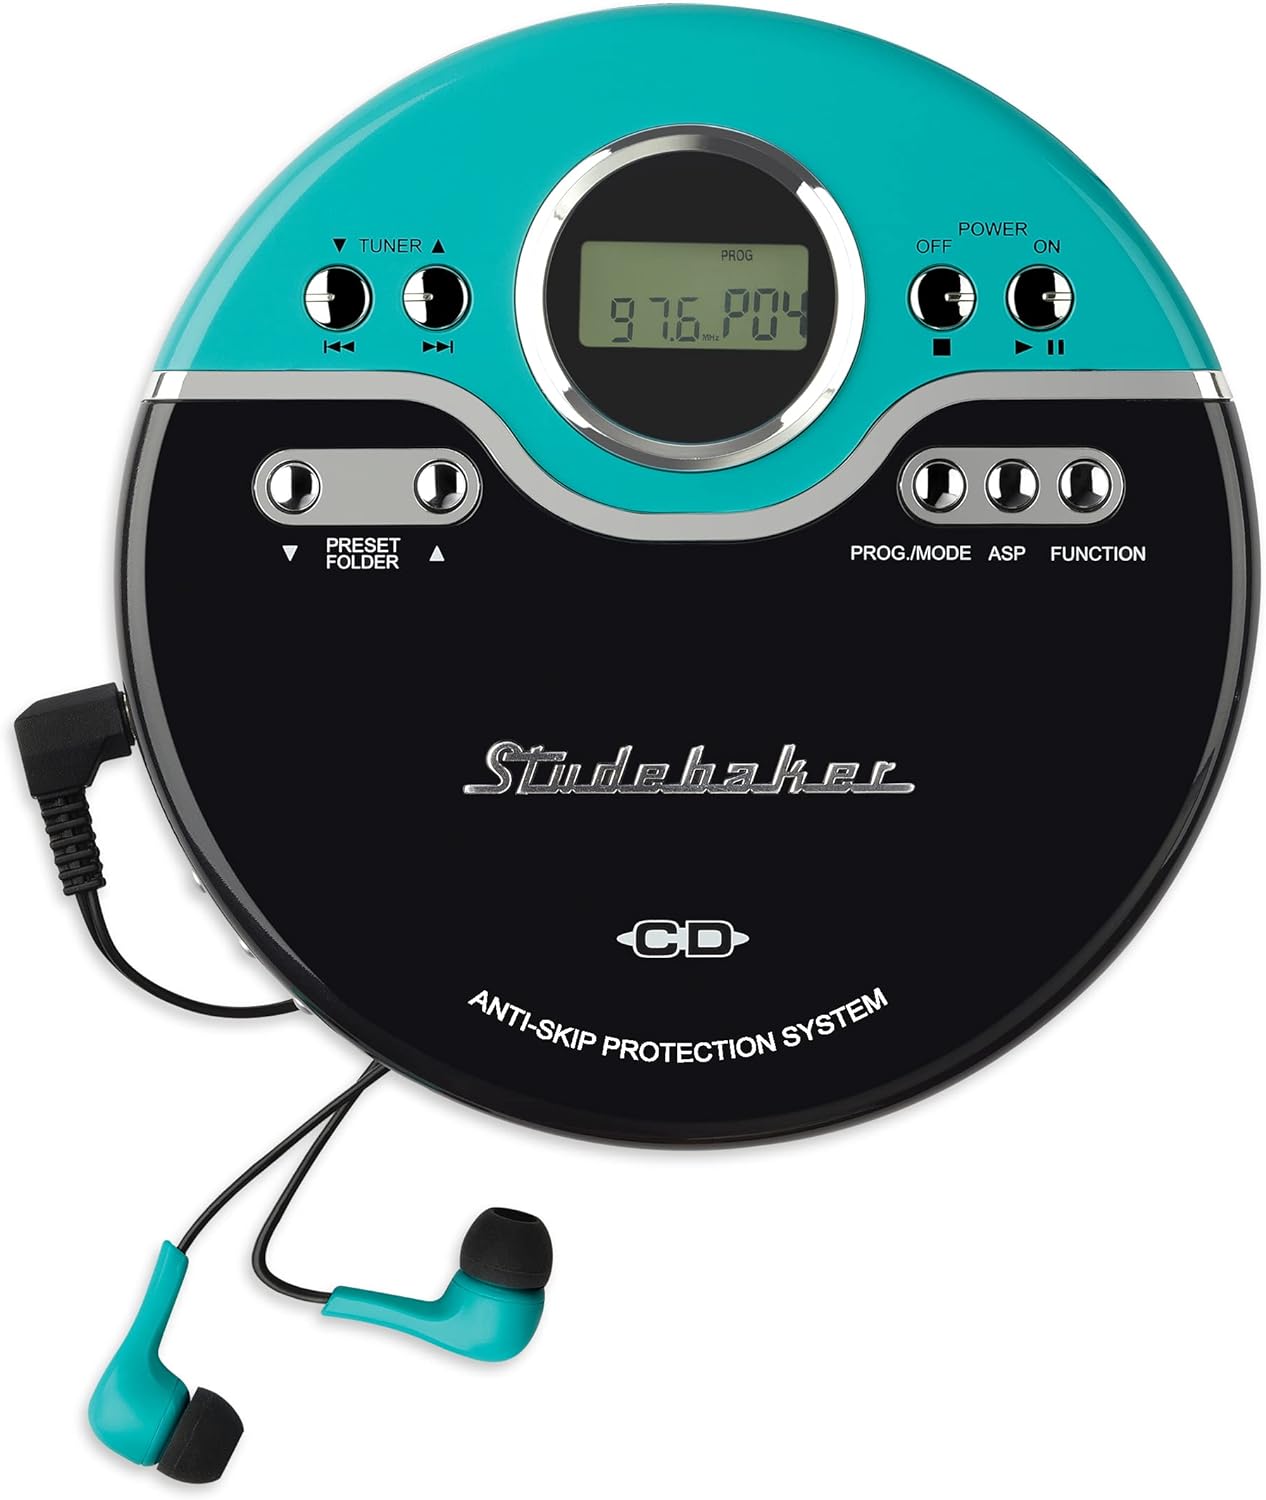 Studebaker レトロポータブルCDプレーヤー CD-R/RW MP3再生 プログラム可能パーソナルCDプレーヤー ポータブルCDプレーヤー アンチスキップ FMラジオ メガバスブースト スポーツイヤホン ヴィンテージターコイズ